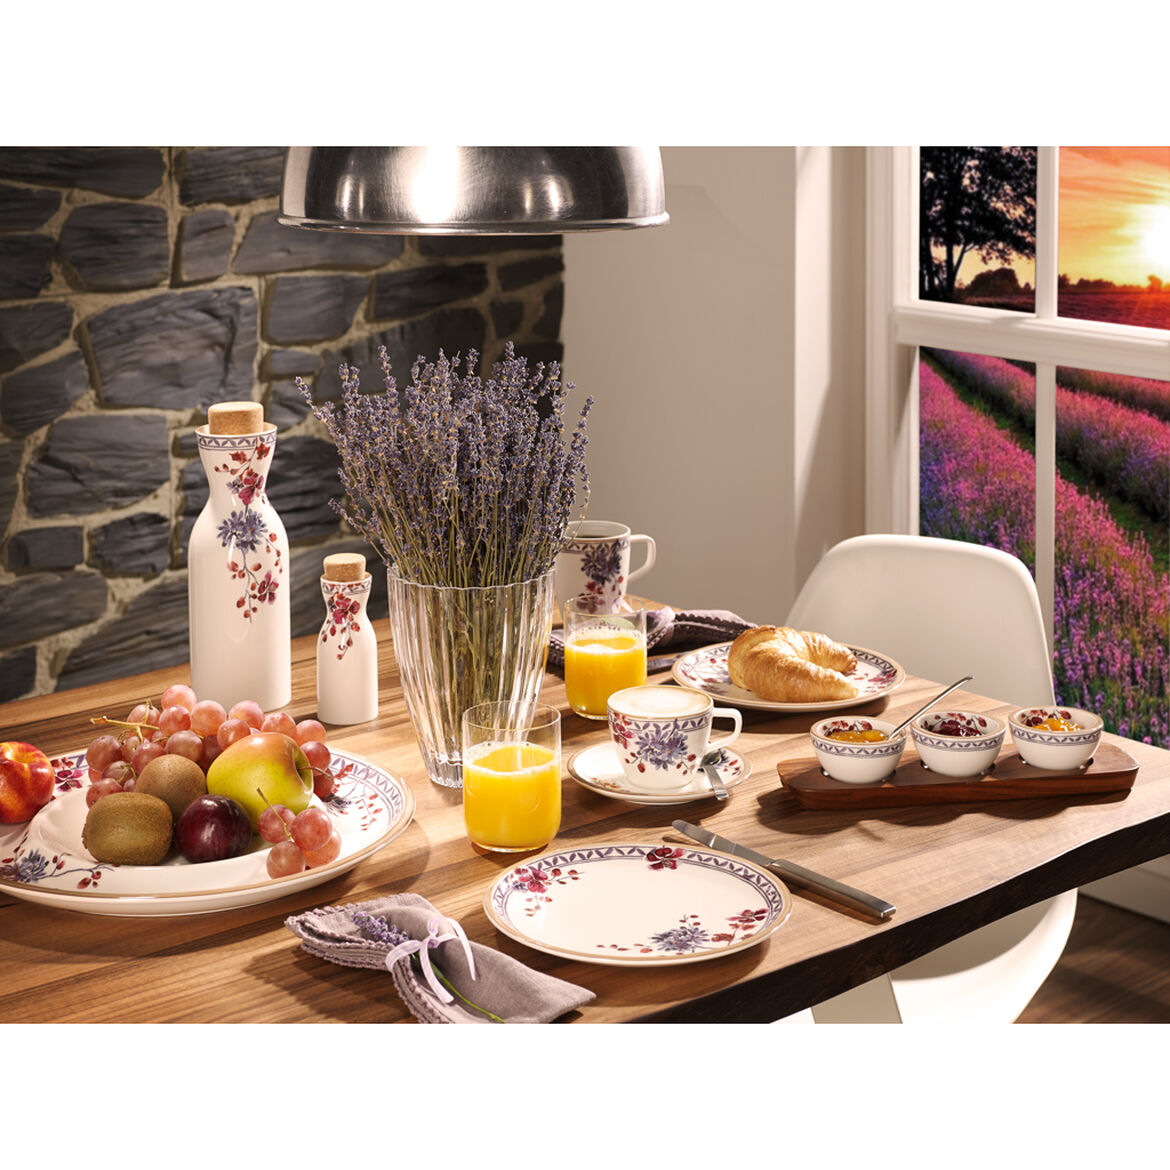 Villeroy & Boch Artesano Provencal Lavender Dinner Plate Floral